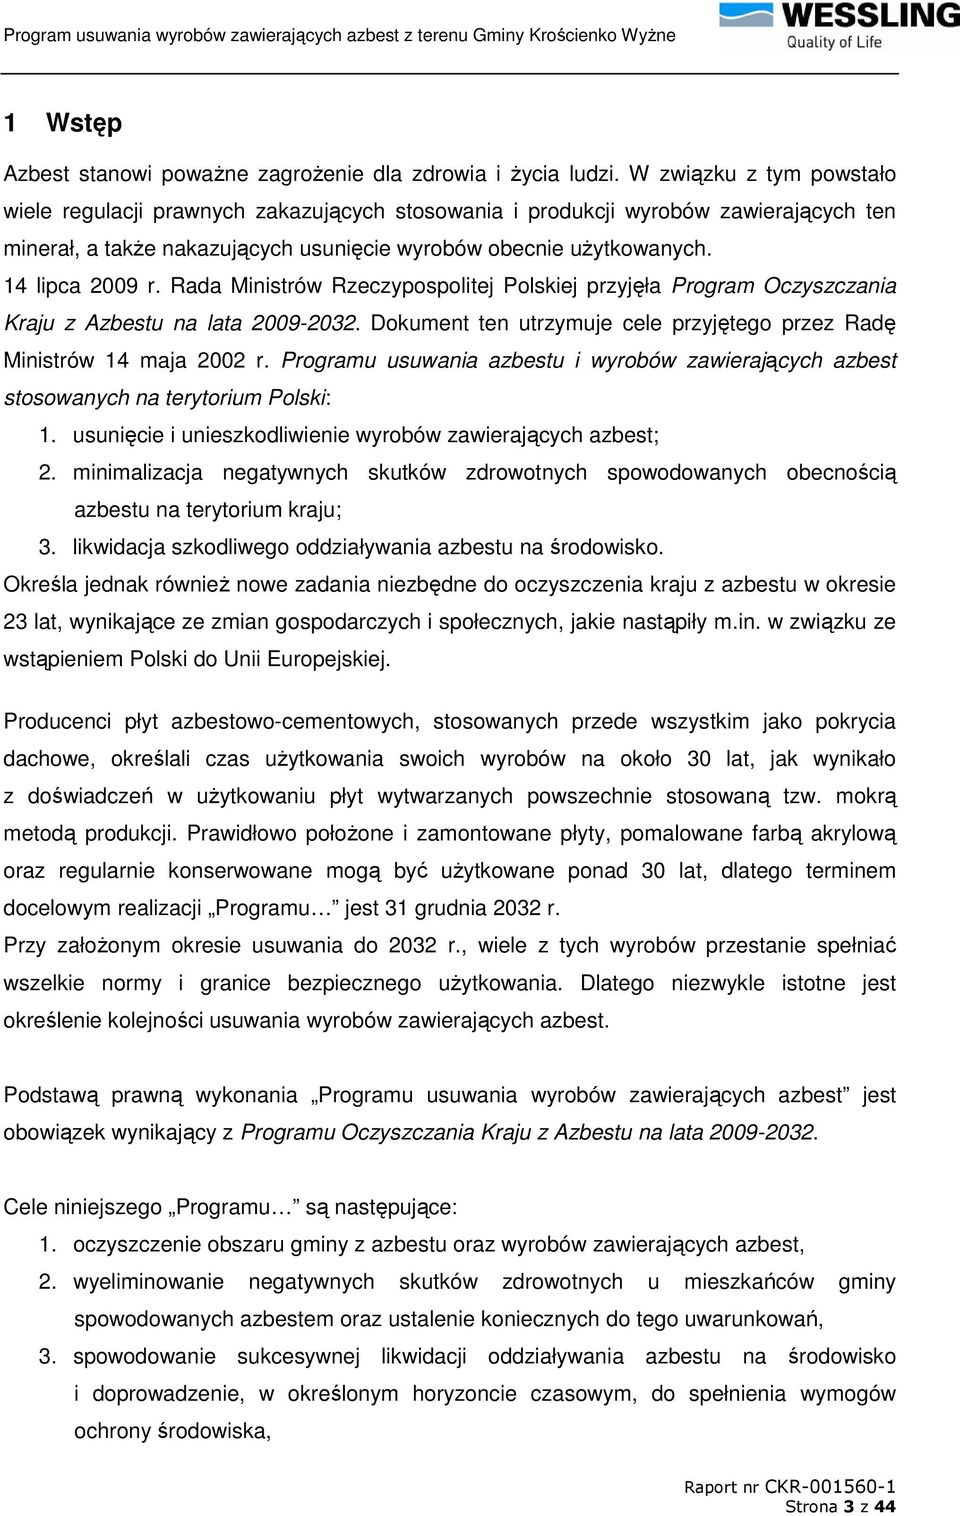 Rada Ministrów Rzeczypospolitej Polskiej przyjęła Program Oczyszczania Kraju z Azbestu na lata 2009-2032. Dokument ten utrzymuje cele przyjętego przez Radę Ministrów 14 maja 2002 r.